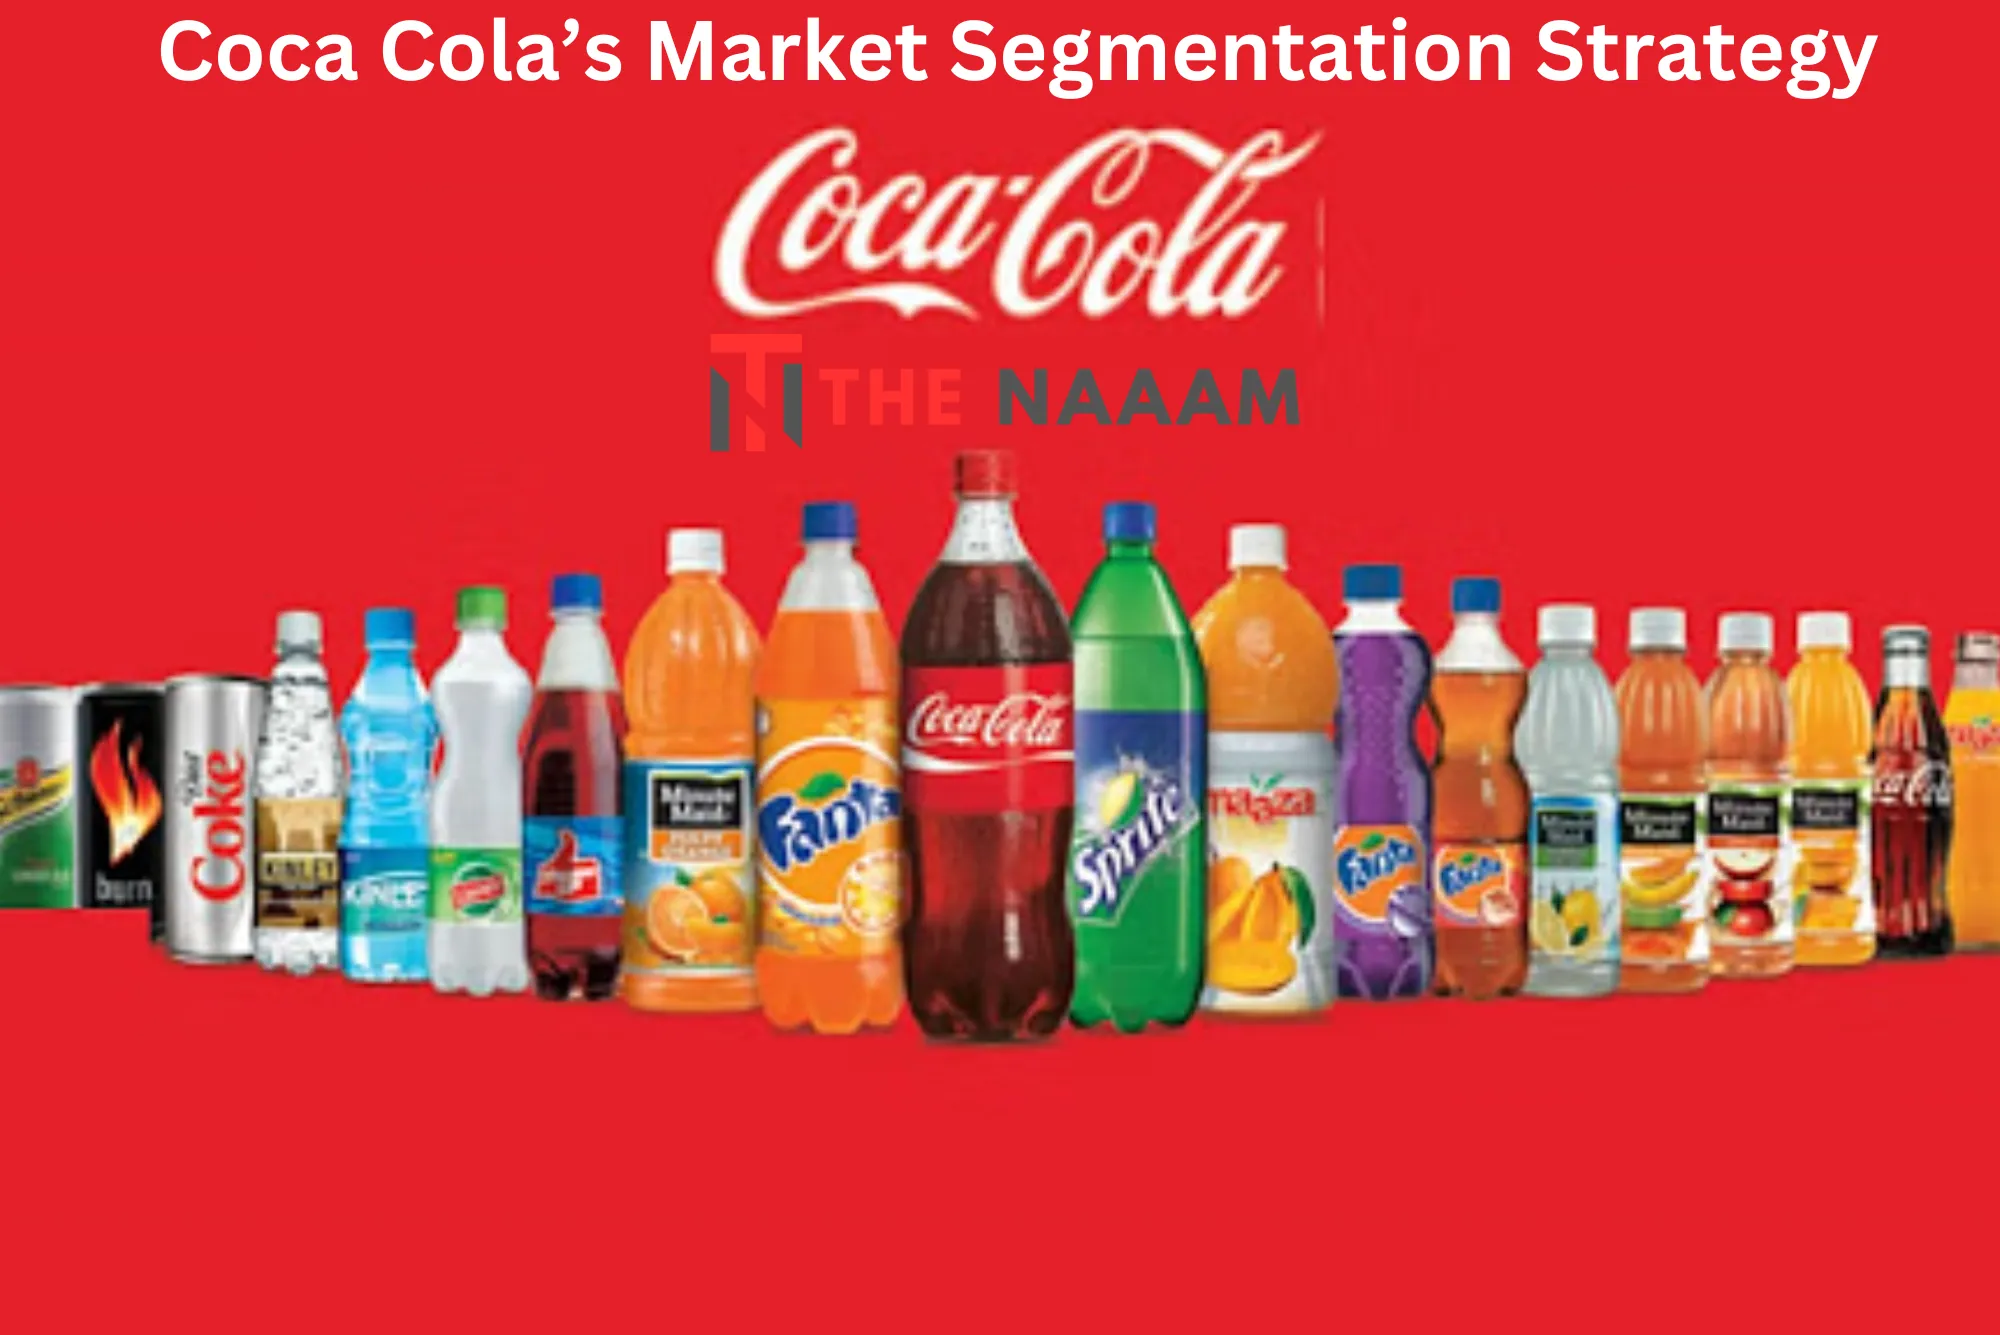 Coca Cola’s Market Segmentation Strategy